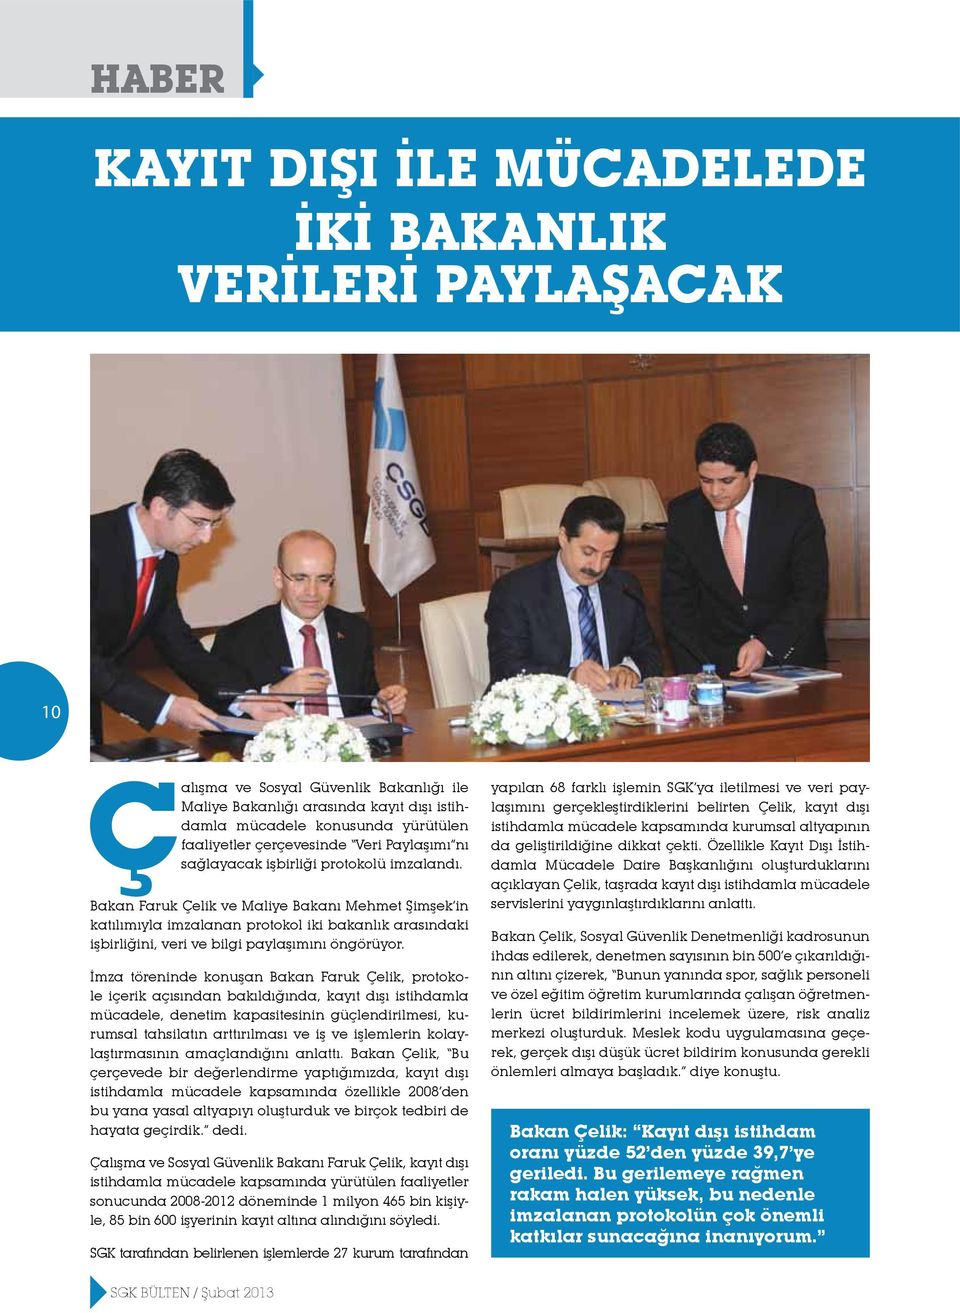 Bakan Faruk Çelik ve Maliye Bakanı Mehmet Şimşek in katılımıyla imzalanan protokol iki bakanlık arasındaki işbirliğini, veri ve bilgi paylaşımını öngörüyor.